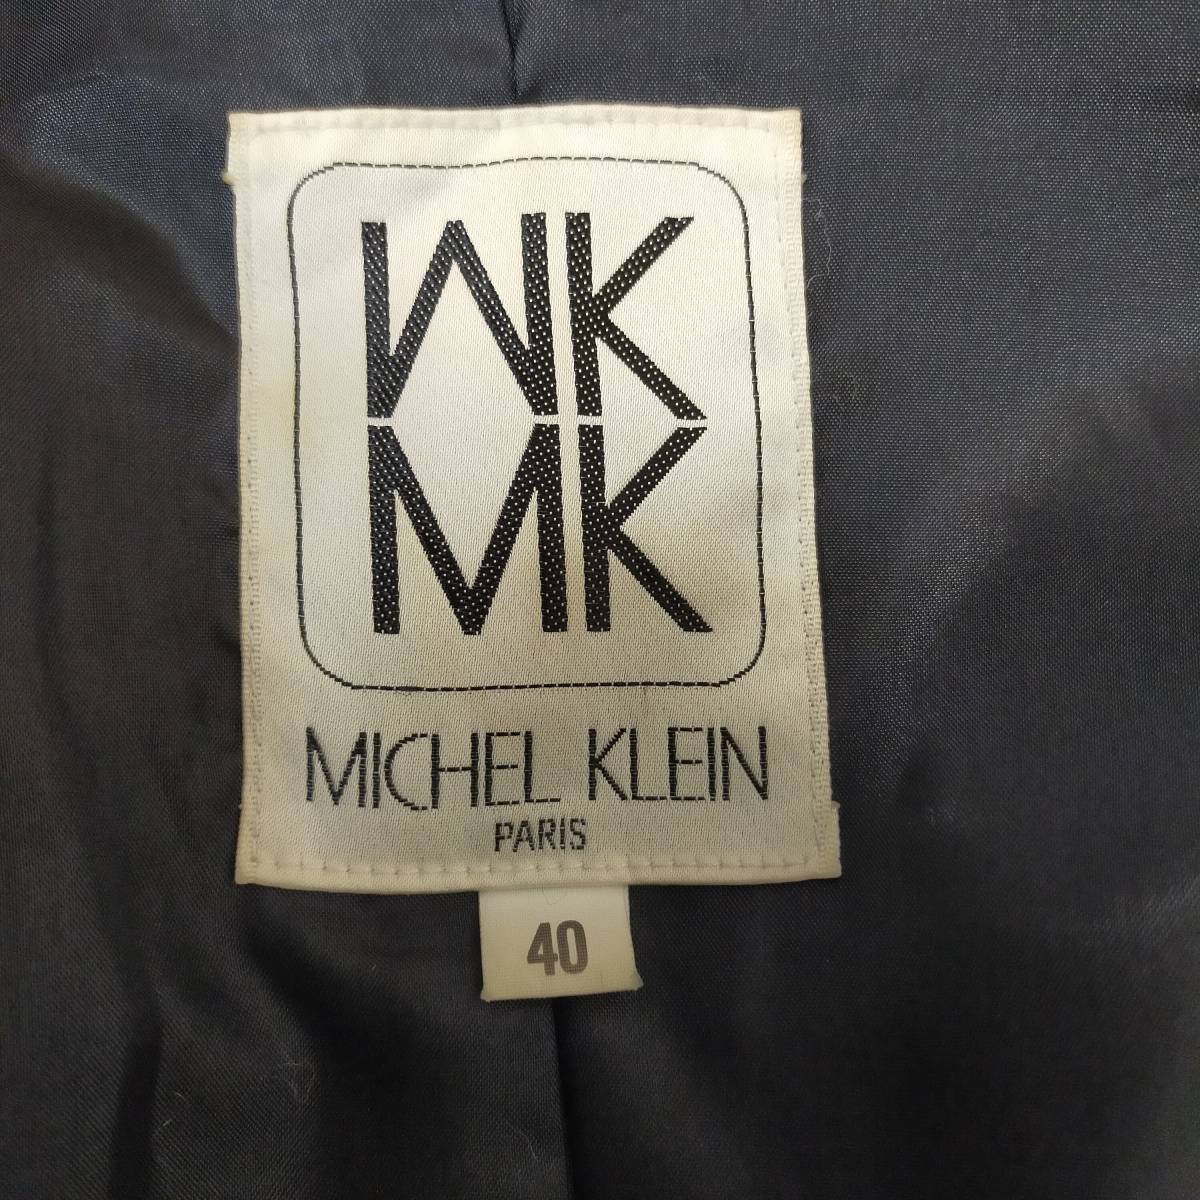 ミシェルクラン MICHEL KLEIN レザージャケット サイズ40 L ブラック 牛革 ステンカラー 韓国製 ミドル丈 フルボタン ポケット 3224